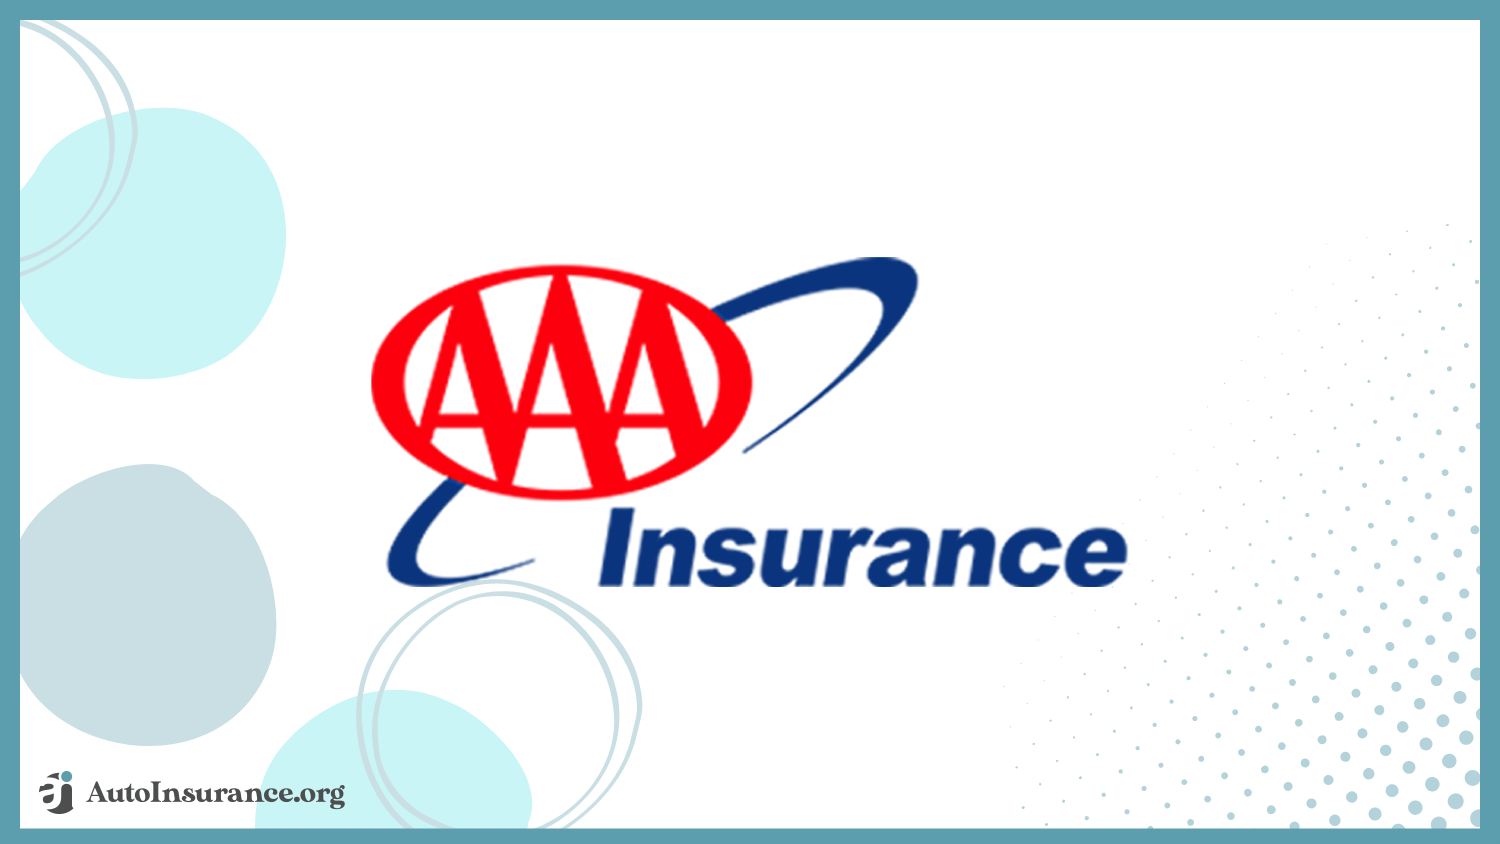 AAA: Best Hyundai Kona Auto Insurance 